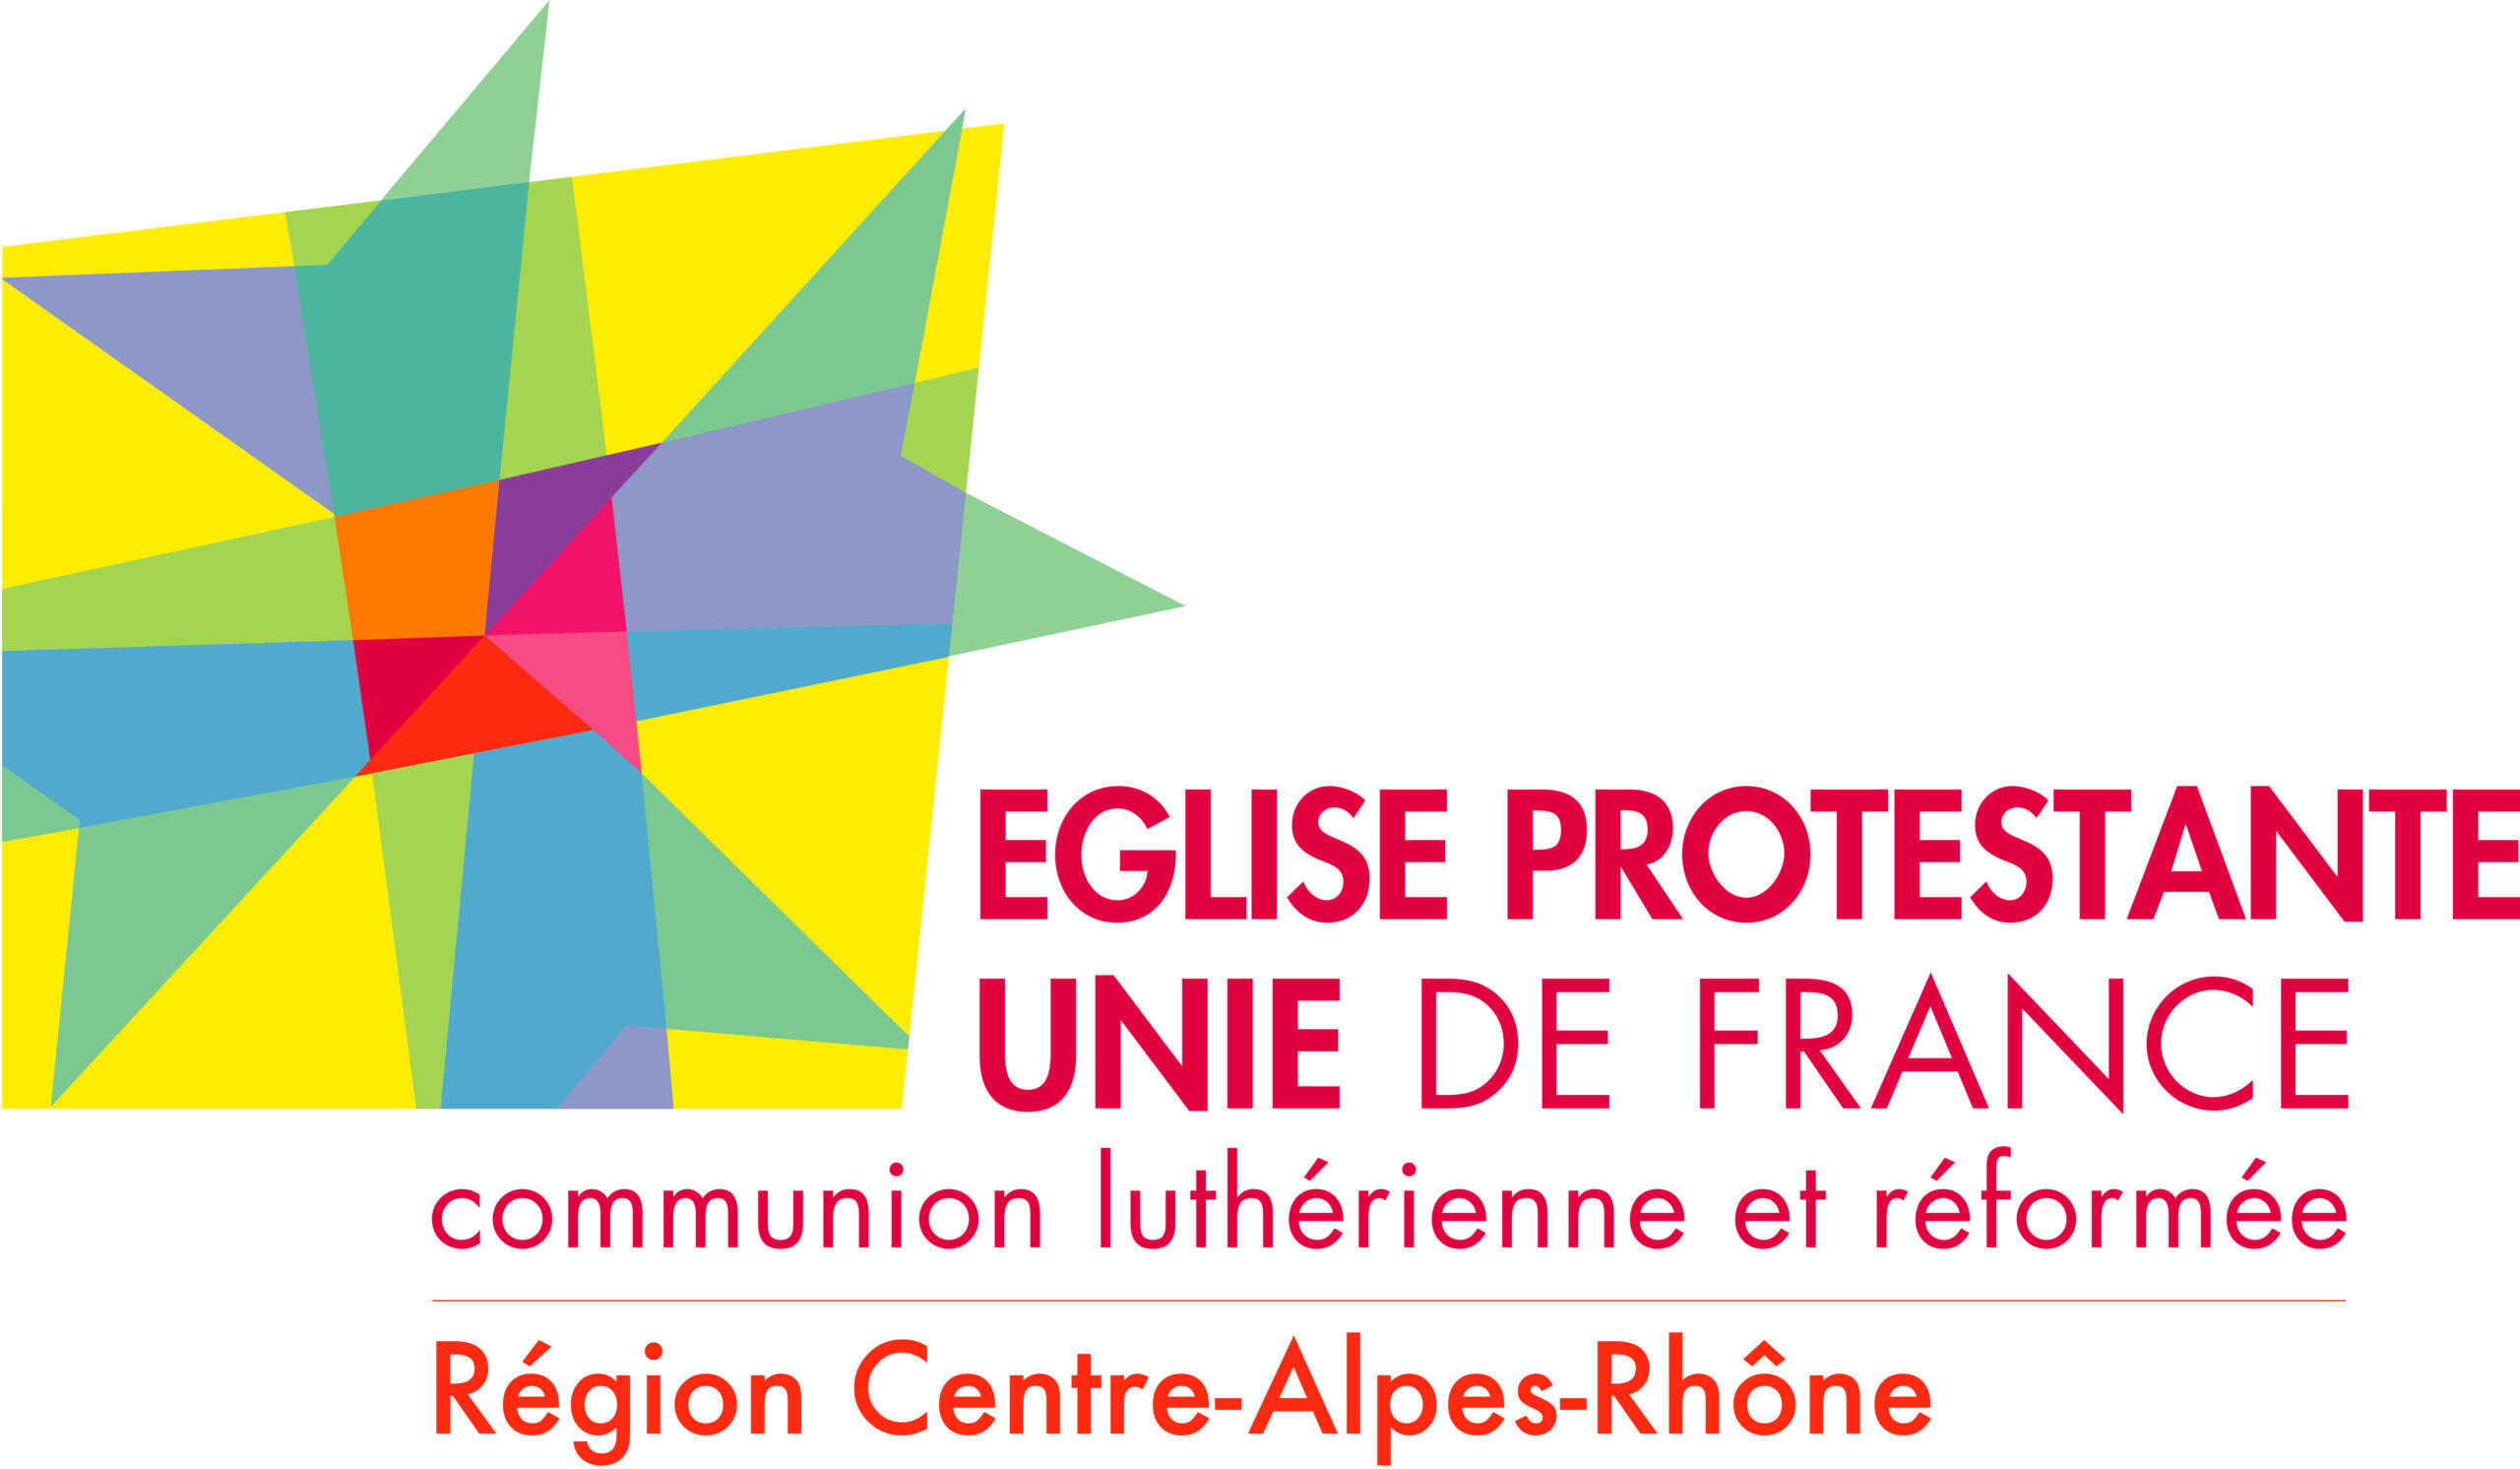 Région Centre-Alpes-Rhône de l'Église protestante unie de France